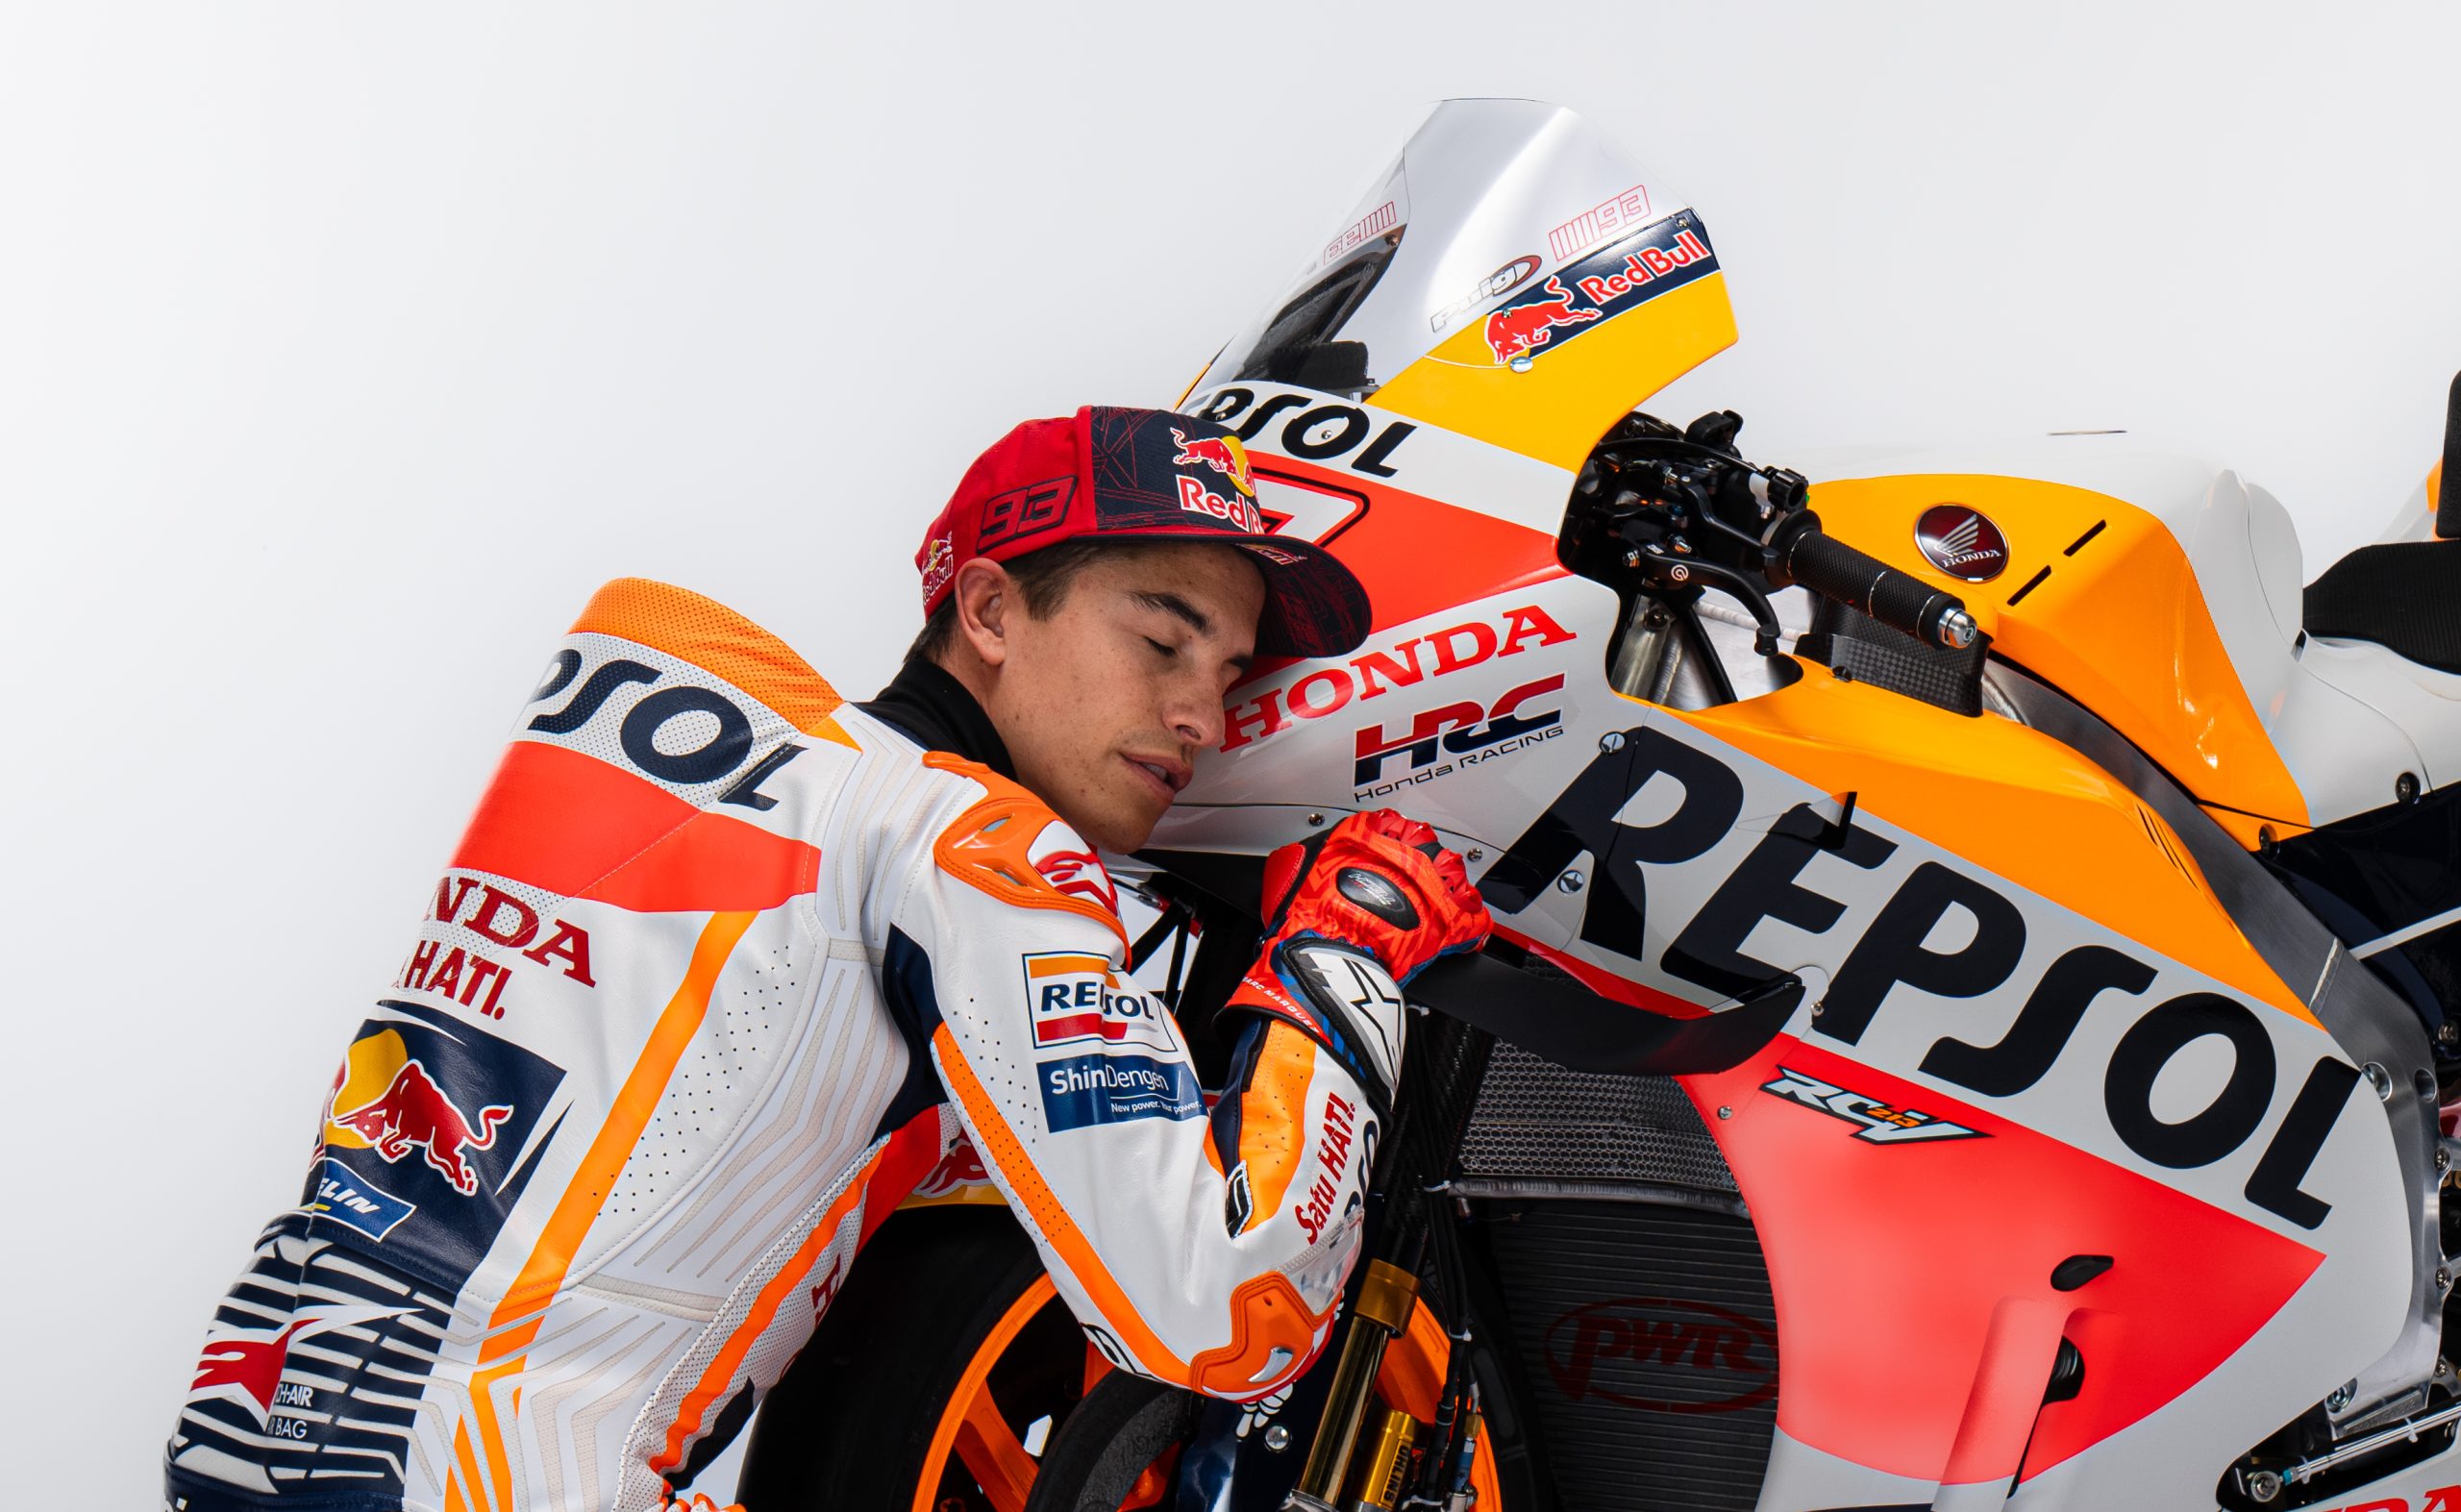 Marquez Akan Keluar dari Honda Jika "Saya tidak punya alat" untuk Memenangkan Gelar MotoGP